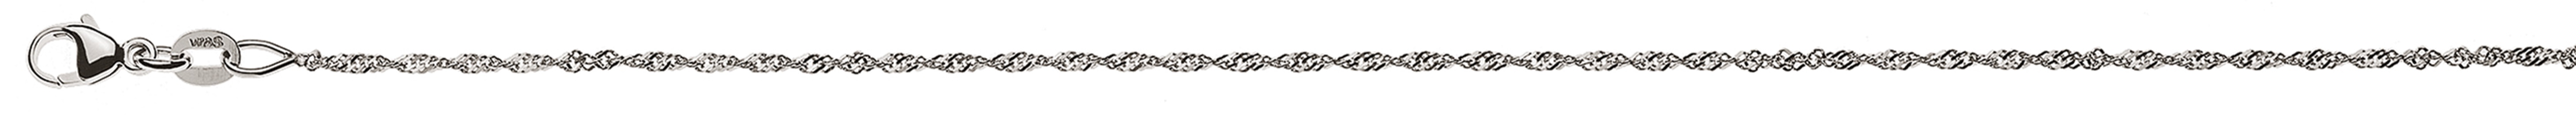 AURONOS Style Halskette Weissgold 9K Singapurkette 55cm 1.2mm